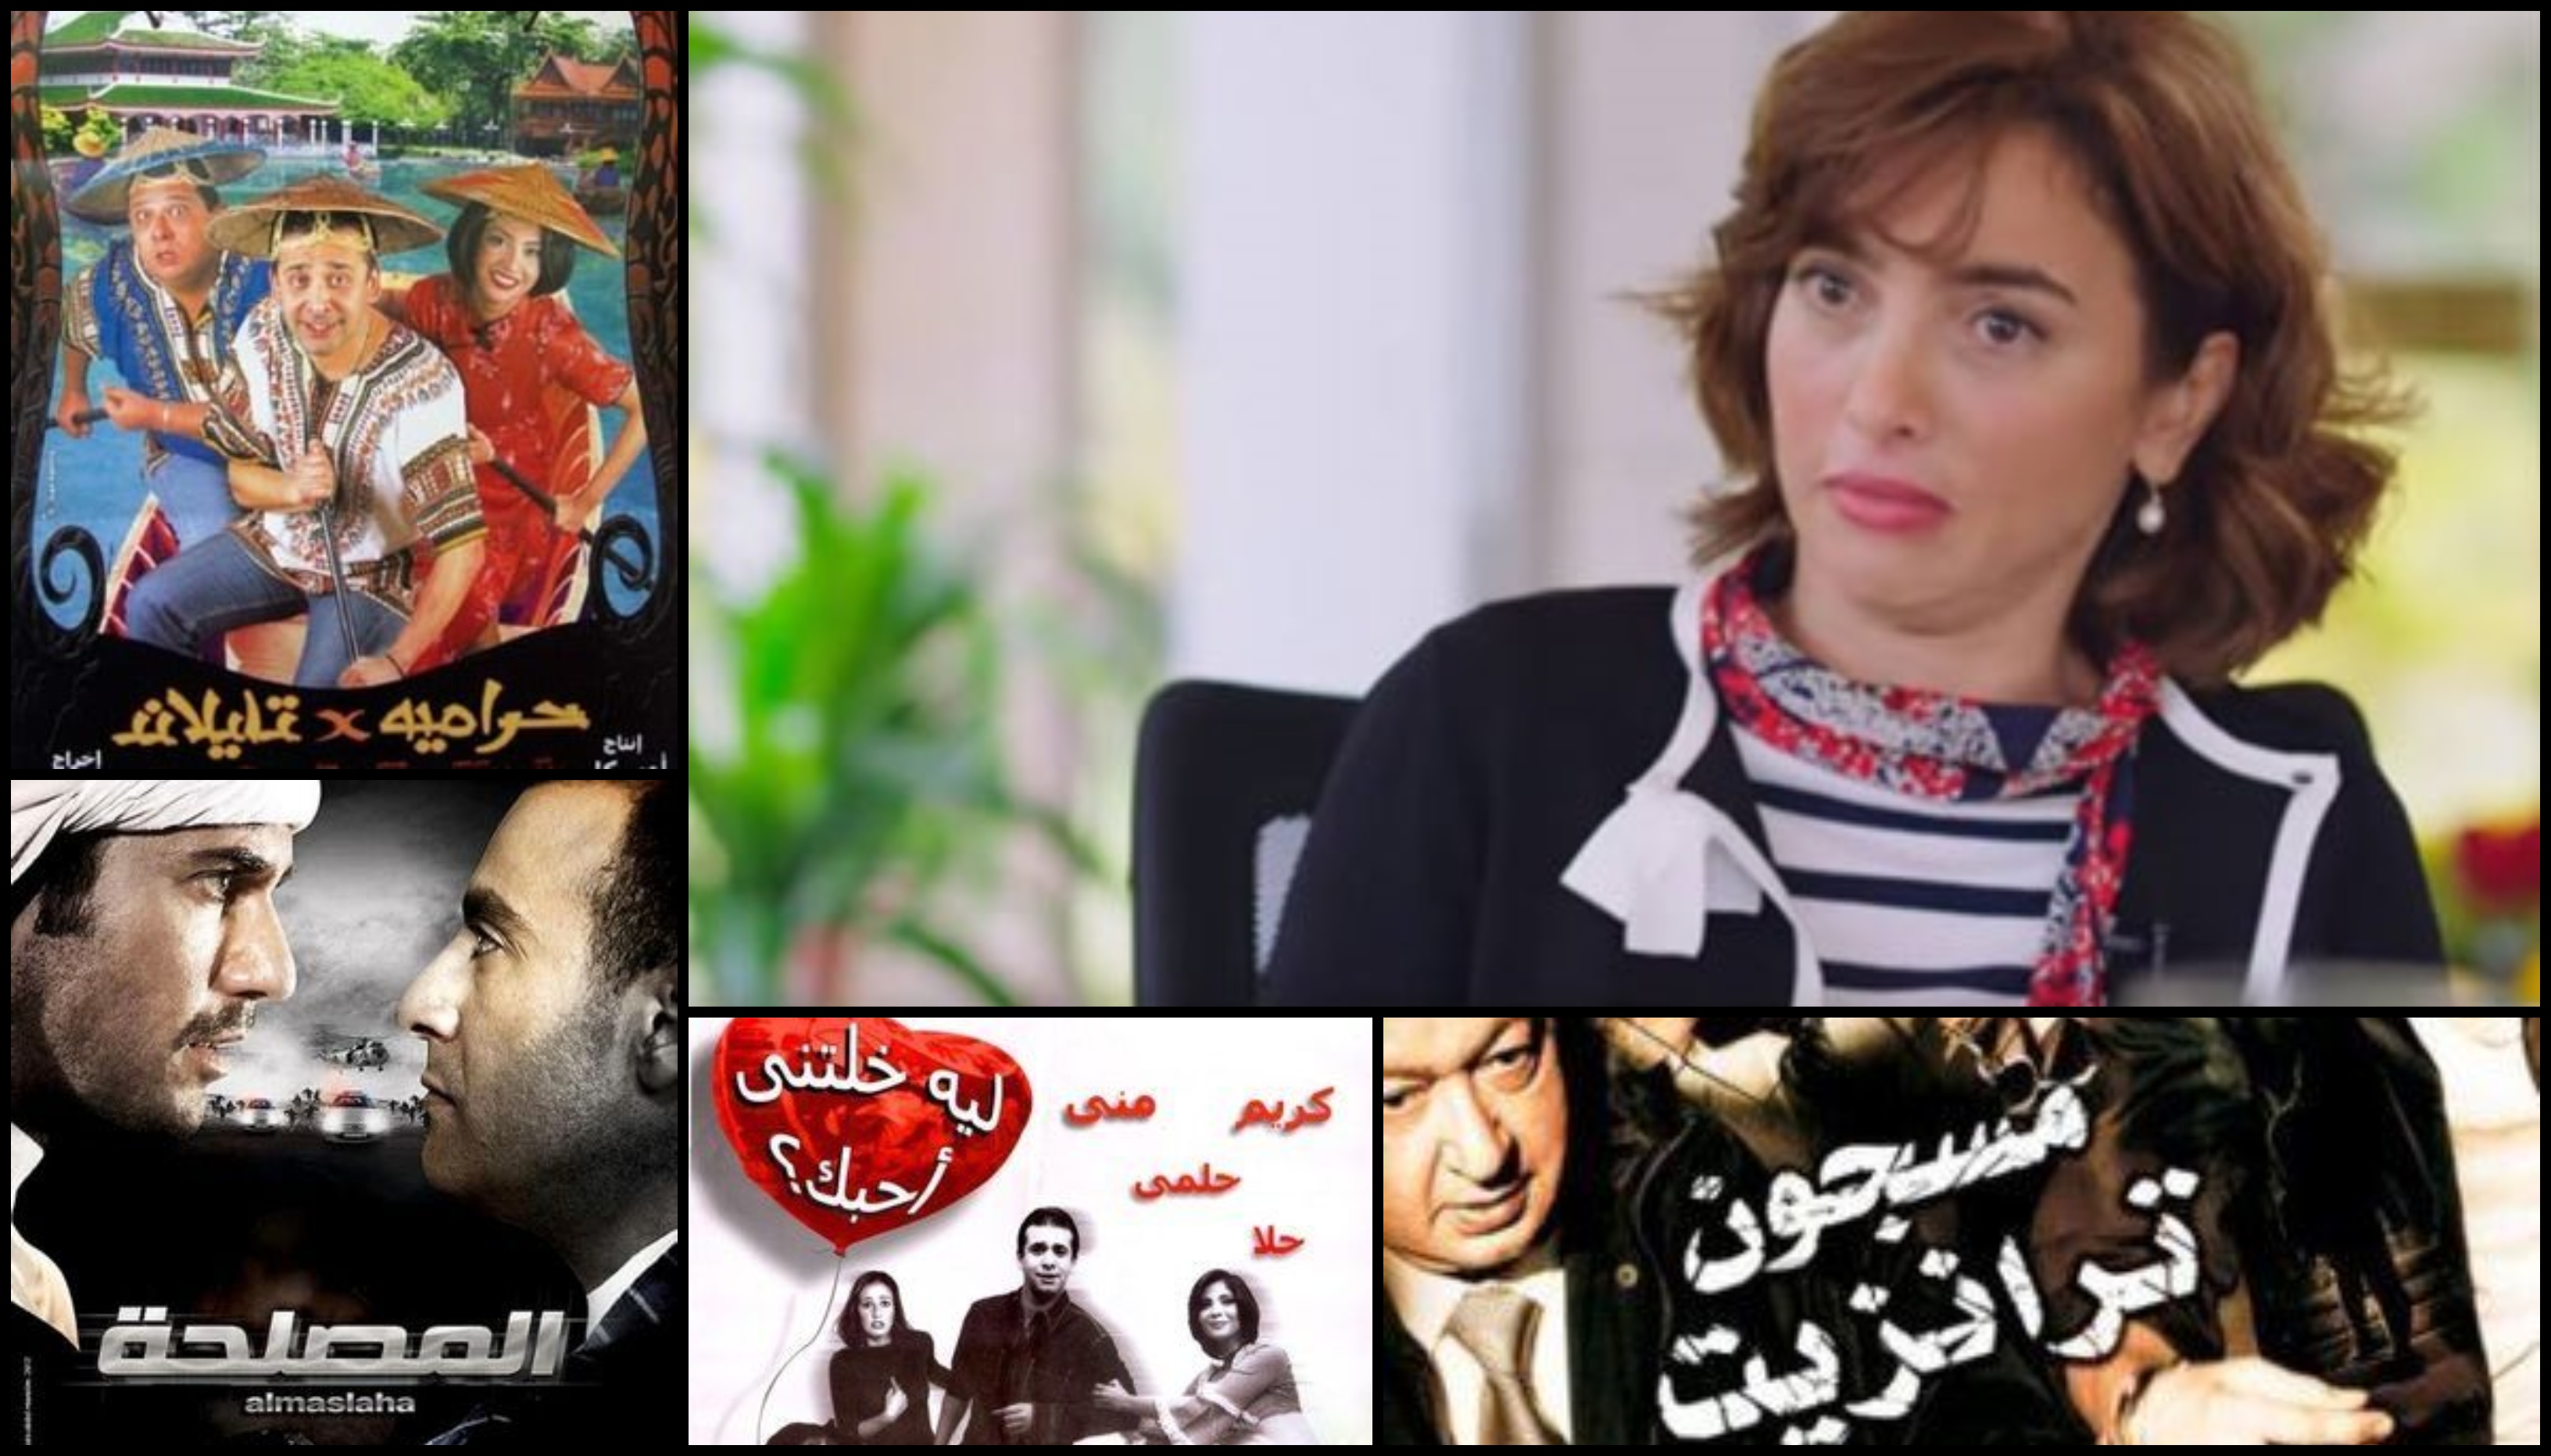 المخرج ساندرا نشأت قدمت 8 أفلام فقط للسينما المصرية